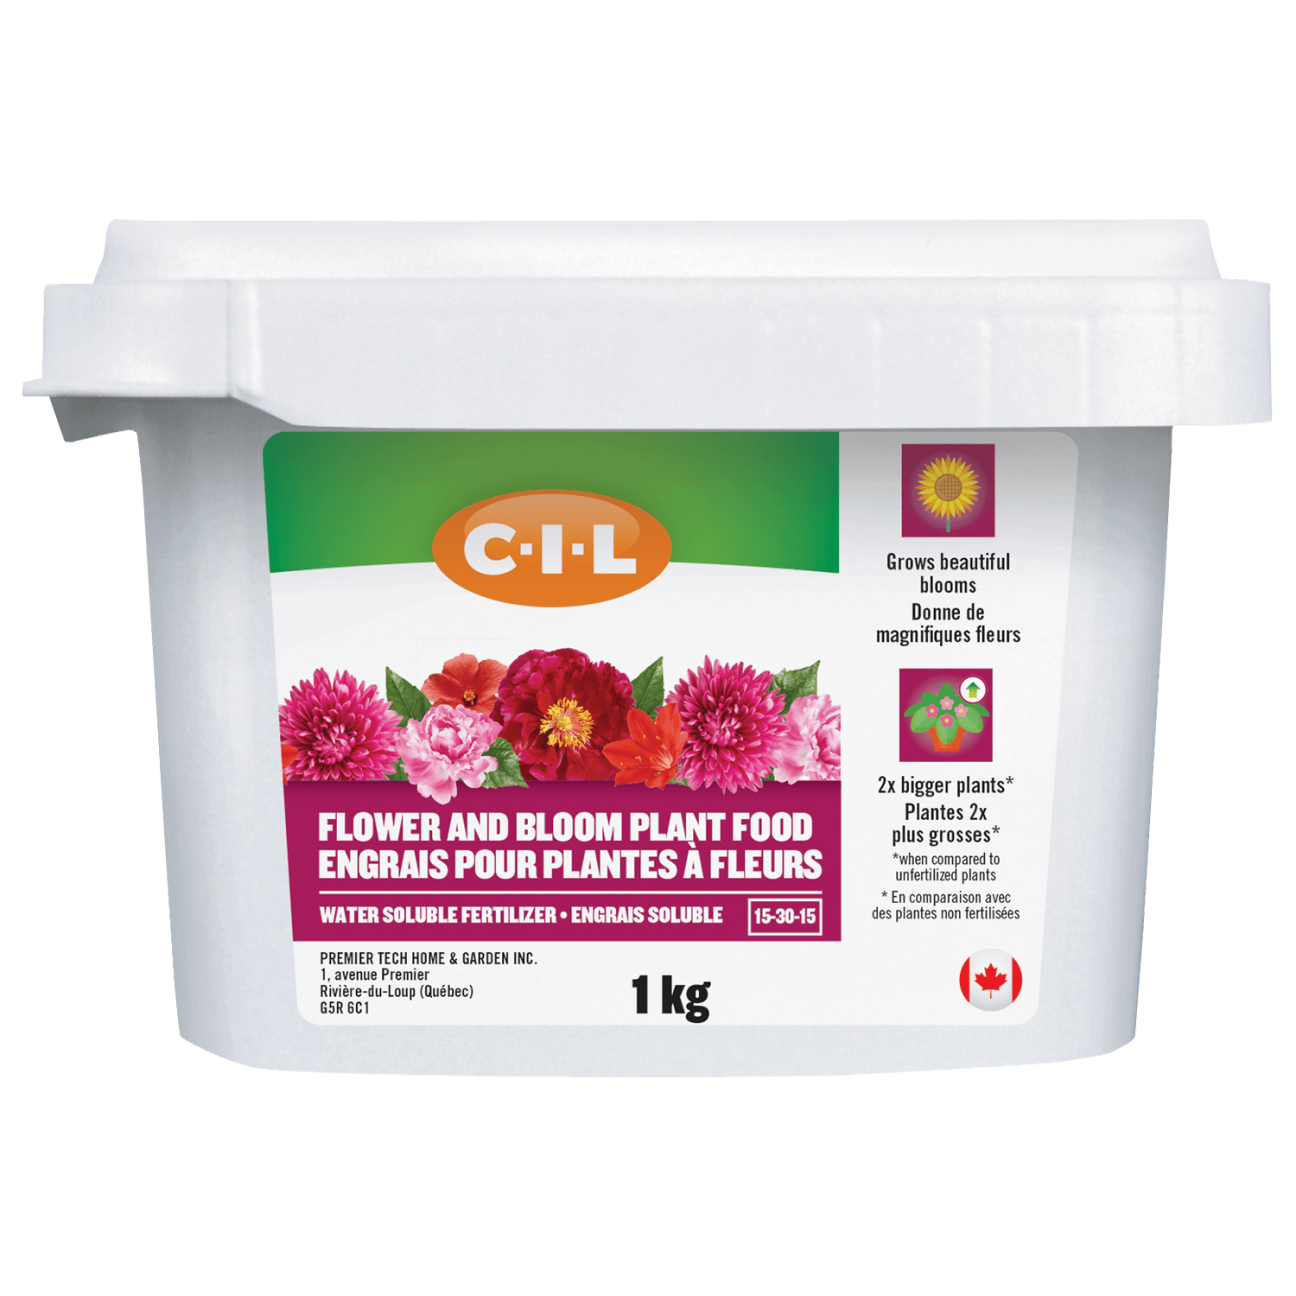 C-I-L® Engrais pour plantes à fleurs 15-30-15